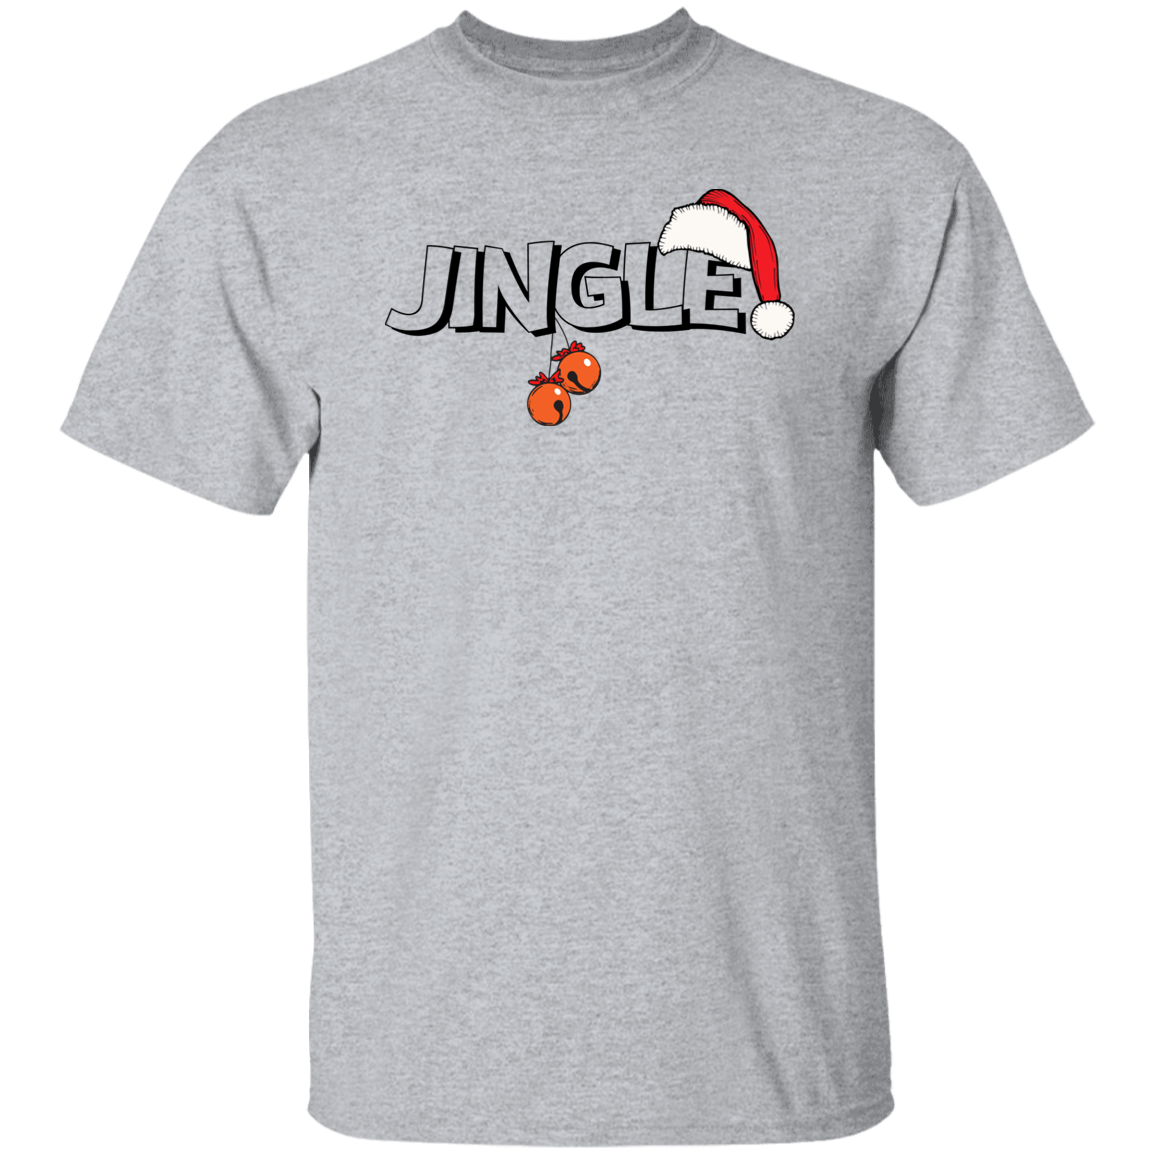 JINGLE 5.3 oz. Christmas T-Shirt